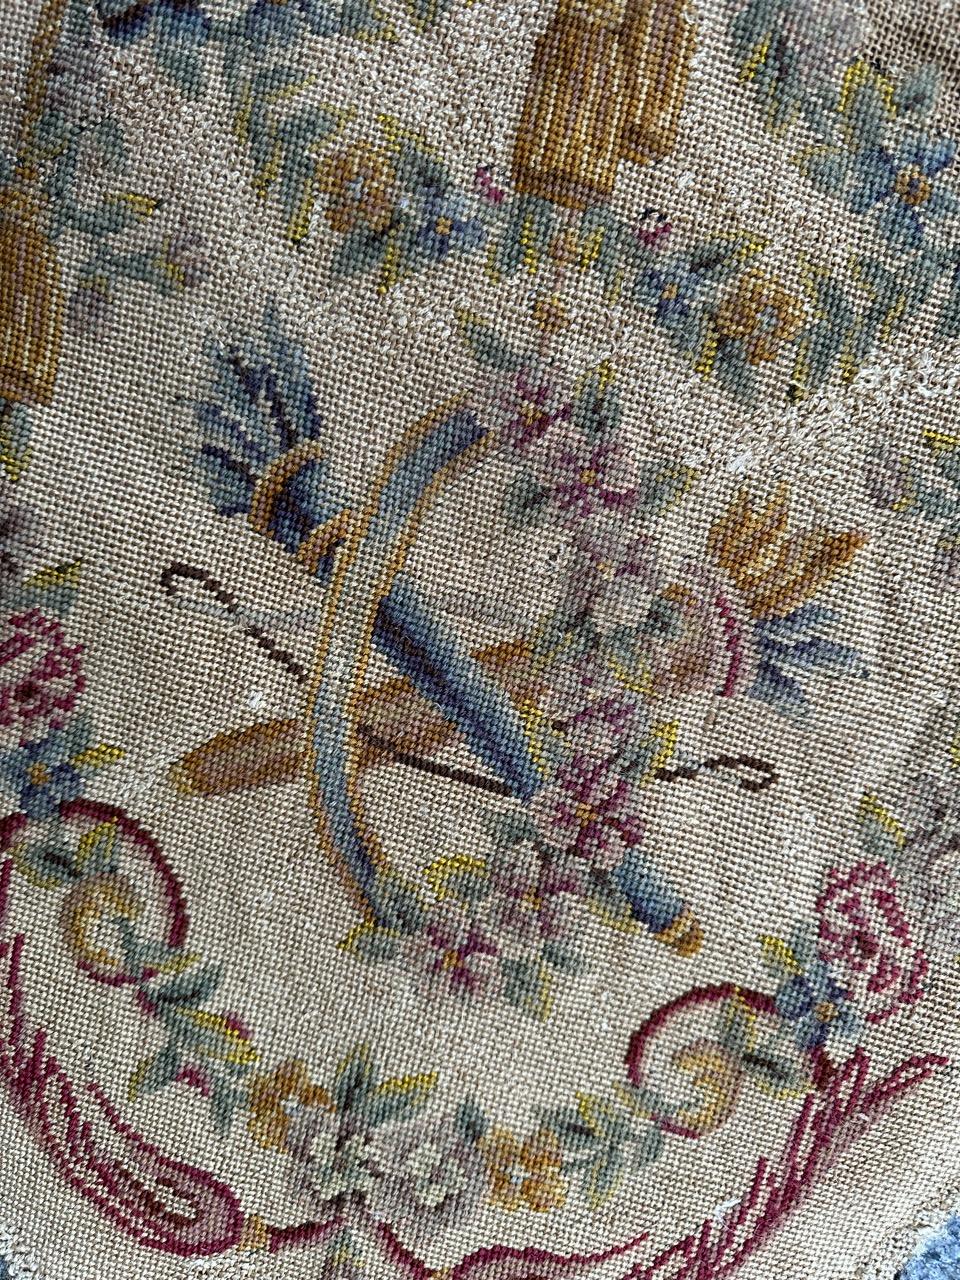 Exquisite französische Nadelspitze aus dem späten 19. Jahrhundert, die ursprünglich von einem Stuhlbezug stammt, aber auch für Kissen oder Rahmen verwendet werden kann. Dieses mit einem bezaubernden Blumendesign aus der Zeit Napoleons III.